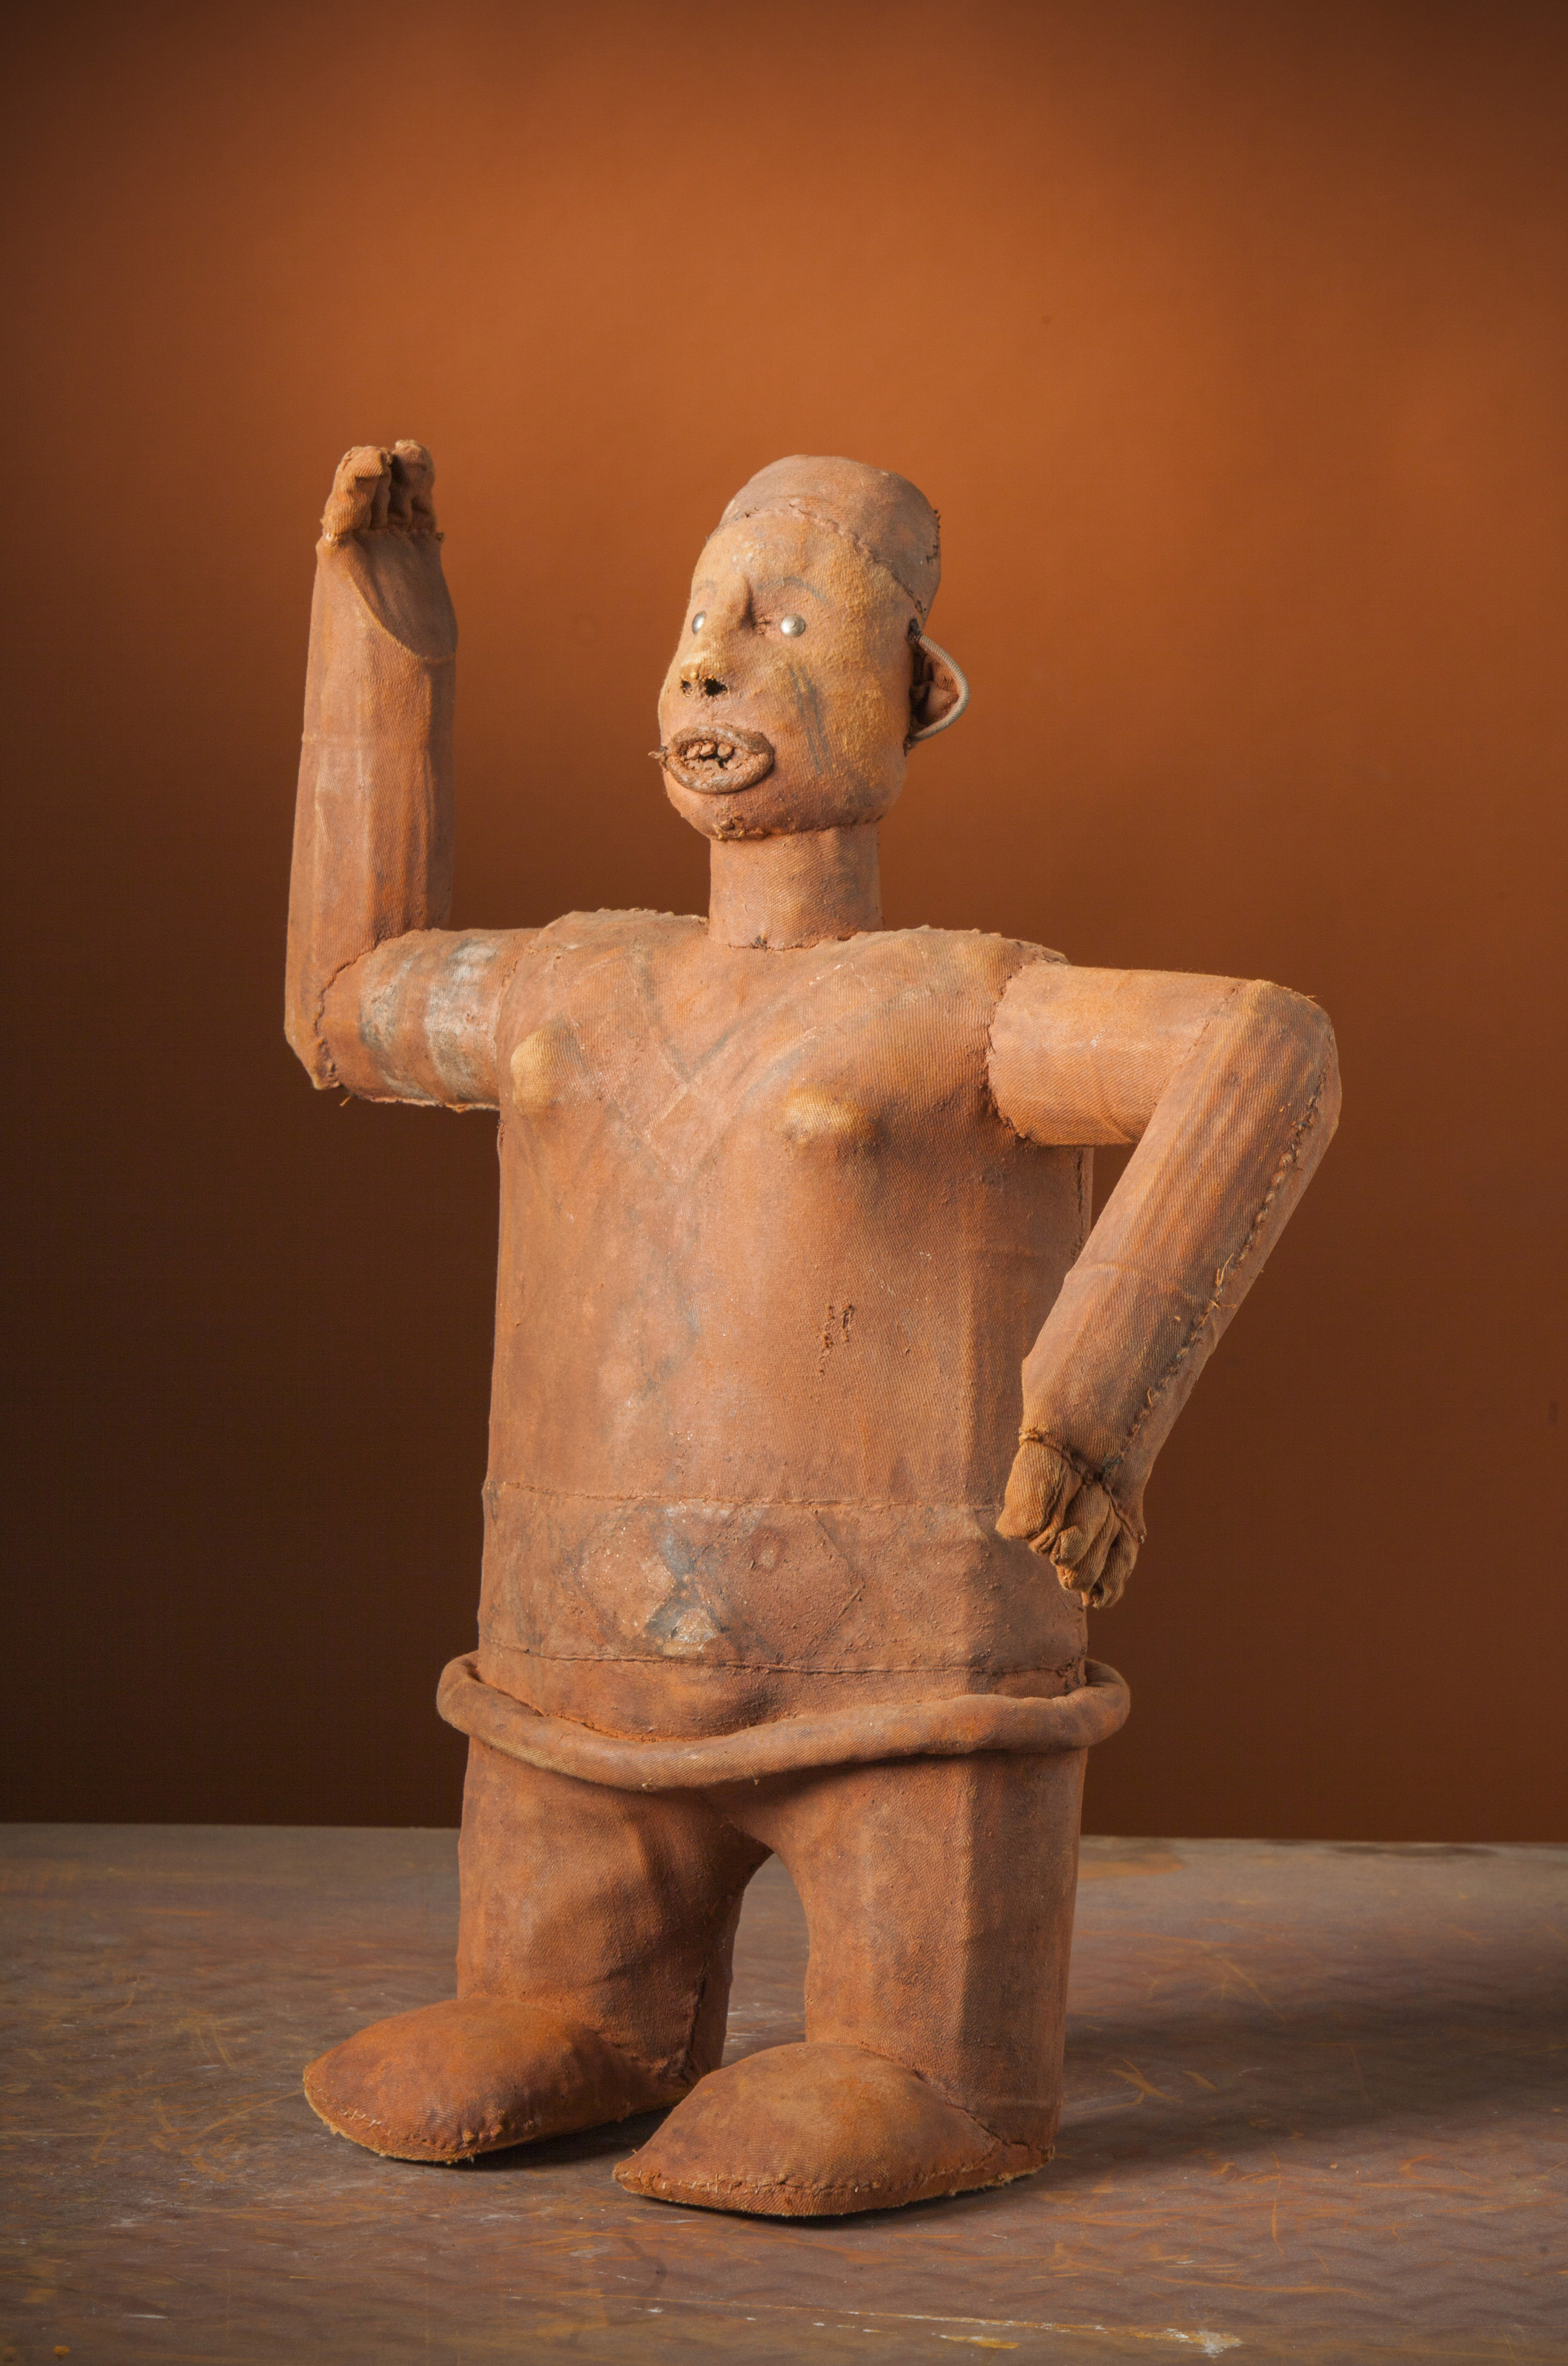 Bembe ( grande poupée), d`afrique : Rép.dém. du Congo., statuette Bembe ( grande poupée), masque ancien africain Bembe ( grande poupée), art du Rép.dém. du Congo. - Art Africain, collection privées Belgique. Statue africaine de la tribu des Bembe ( grande poupée), provenant du Rép.dém. du Congo., 1765:Statue d